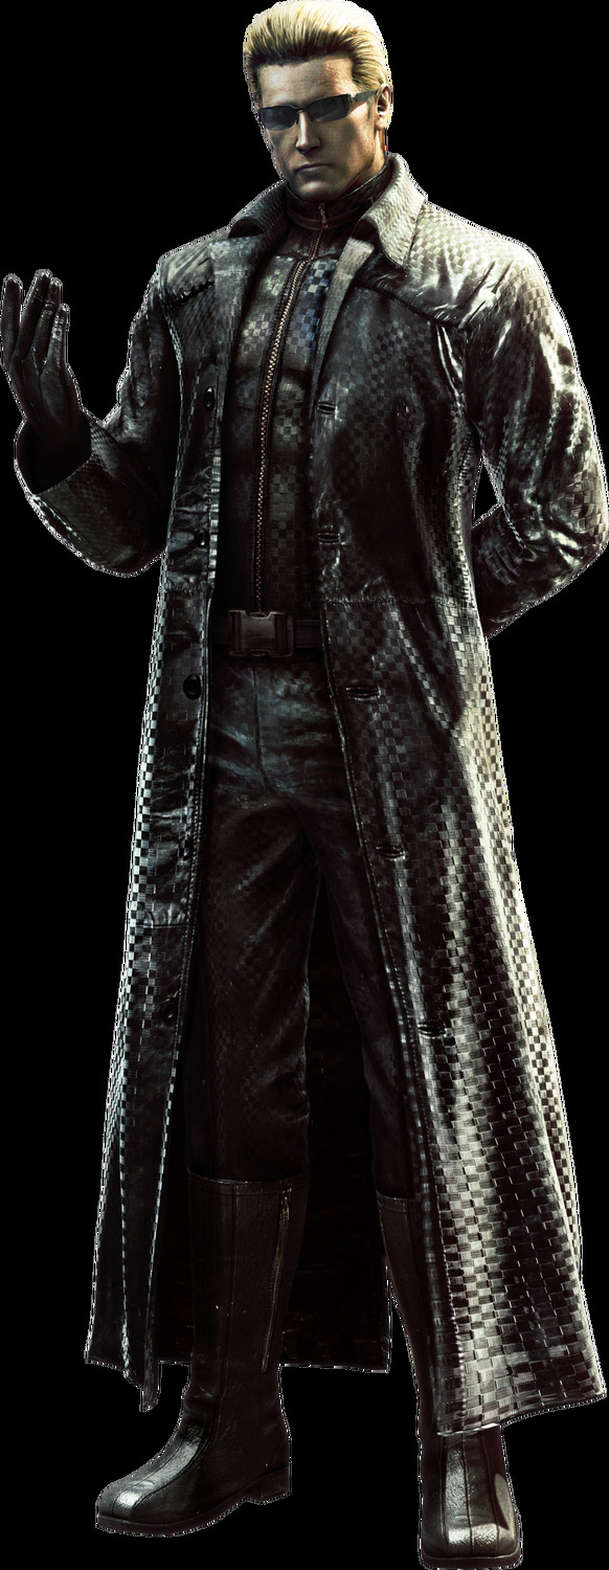 Resident Evil: Welcome to Raccoon City - Věrné zpracování hry mění datum premiéry | Fandíme filmu